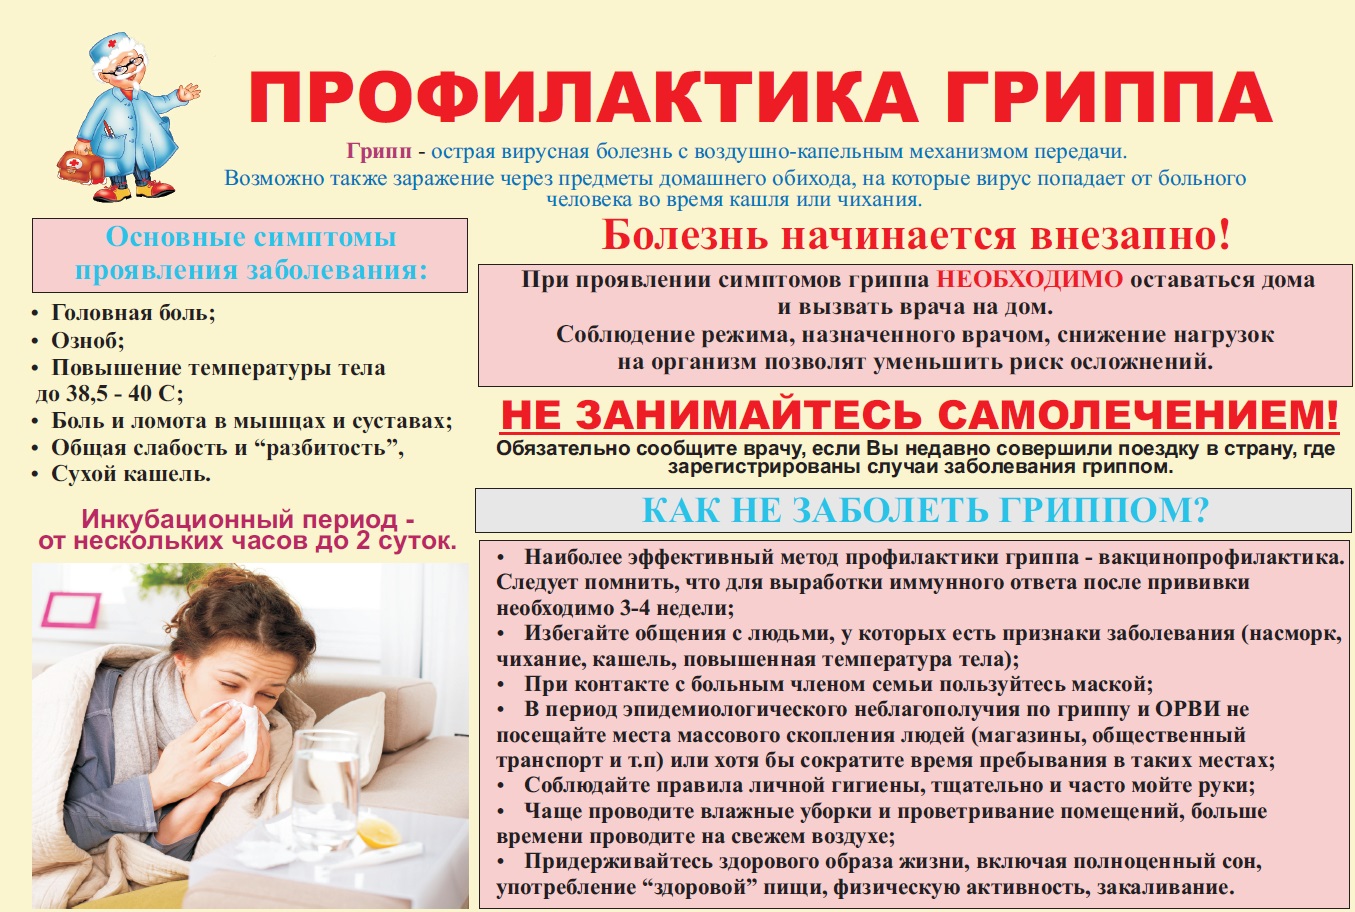 Буклеты, листовки, плакаты по профилактике гриппа и вакцинации